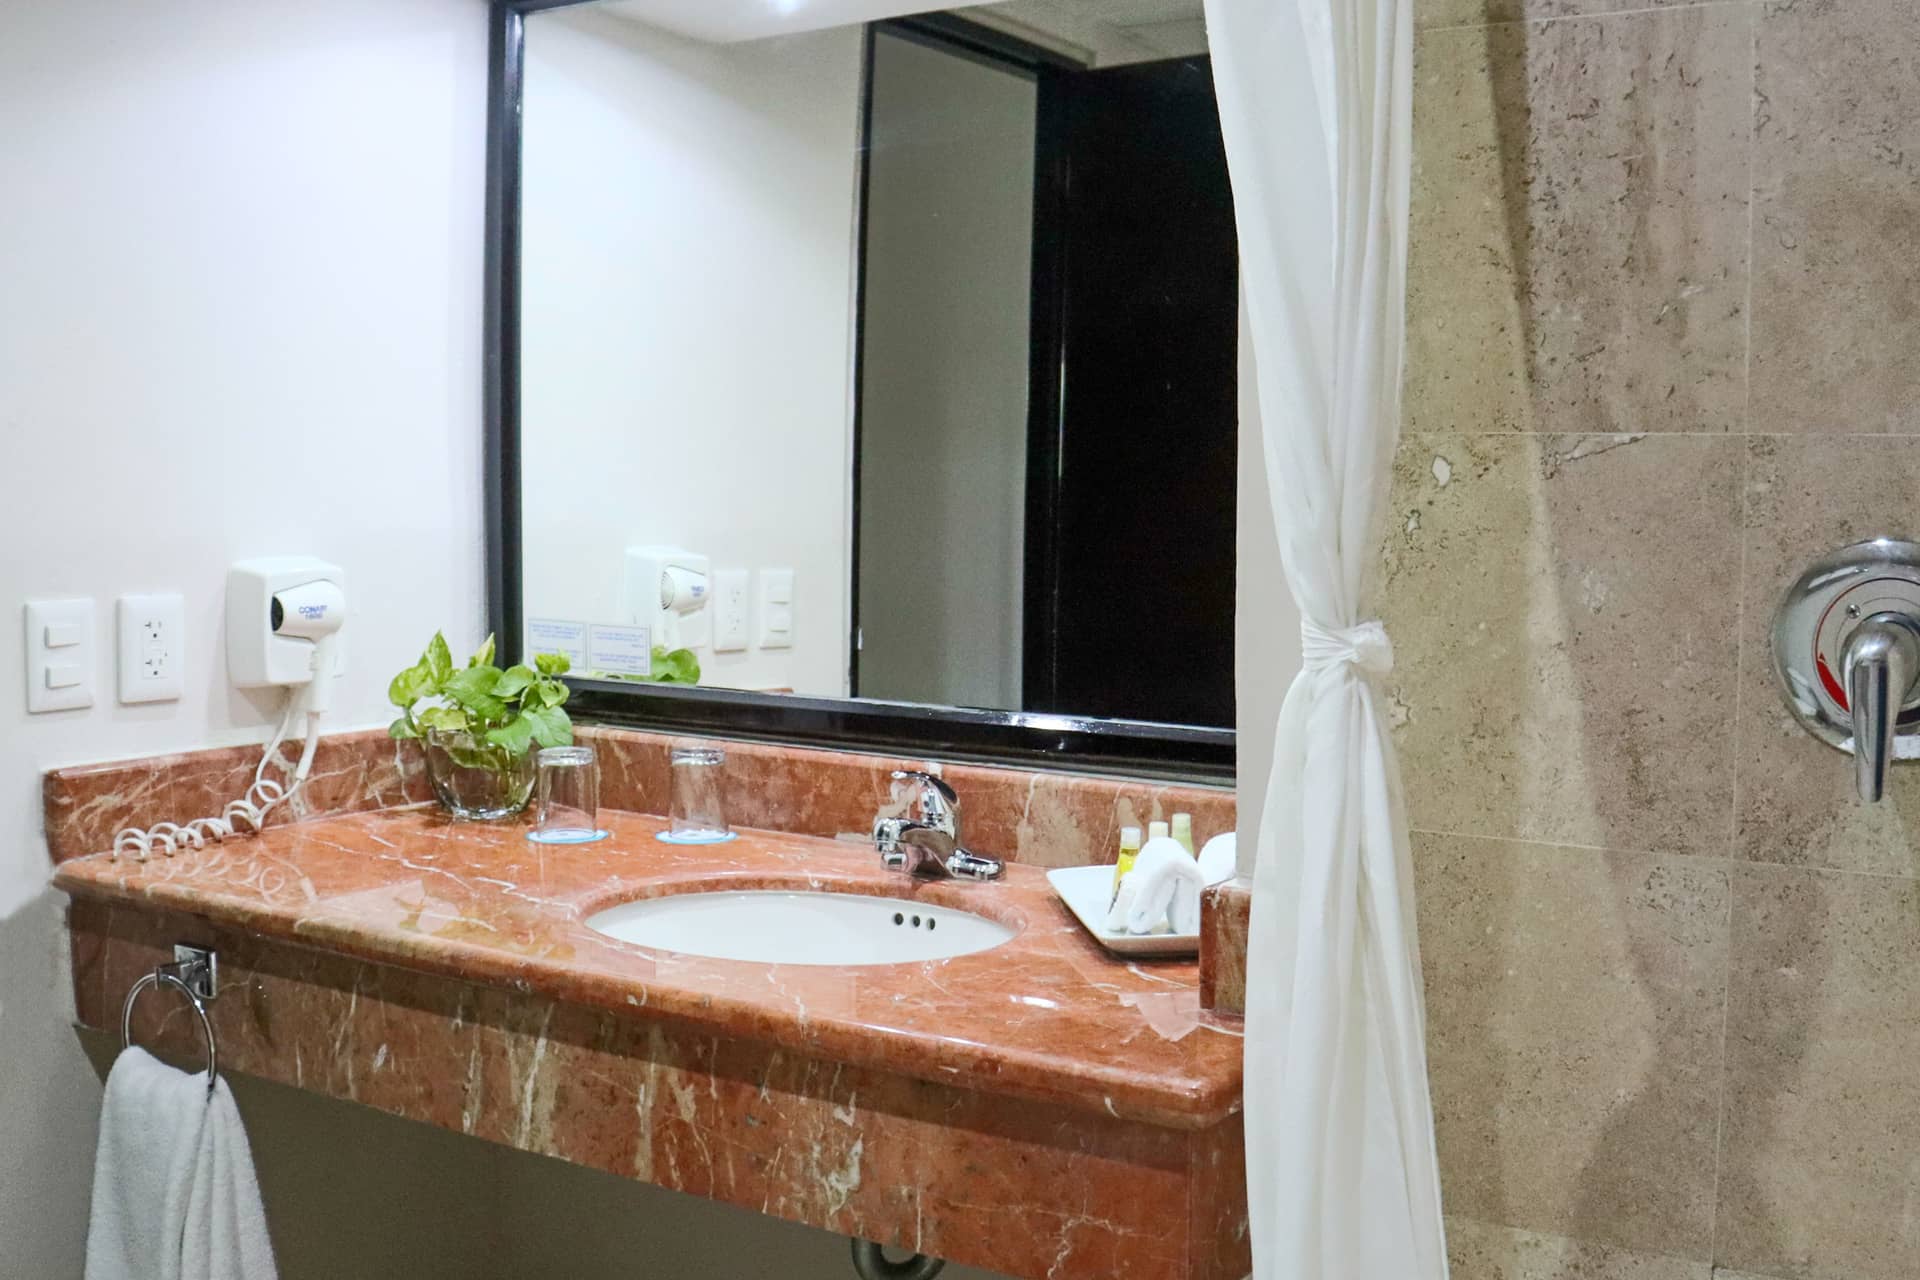 habitaciones frente al mar en cancun hotel casa maya